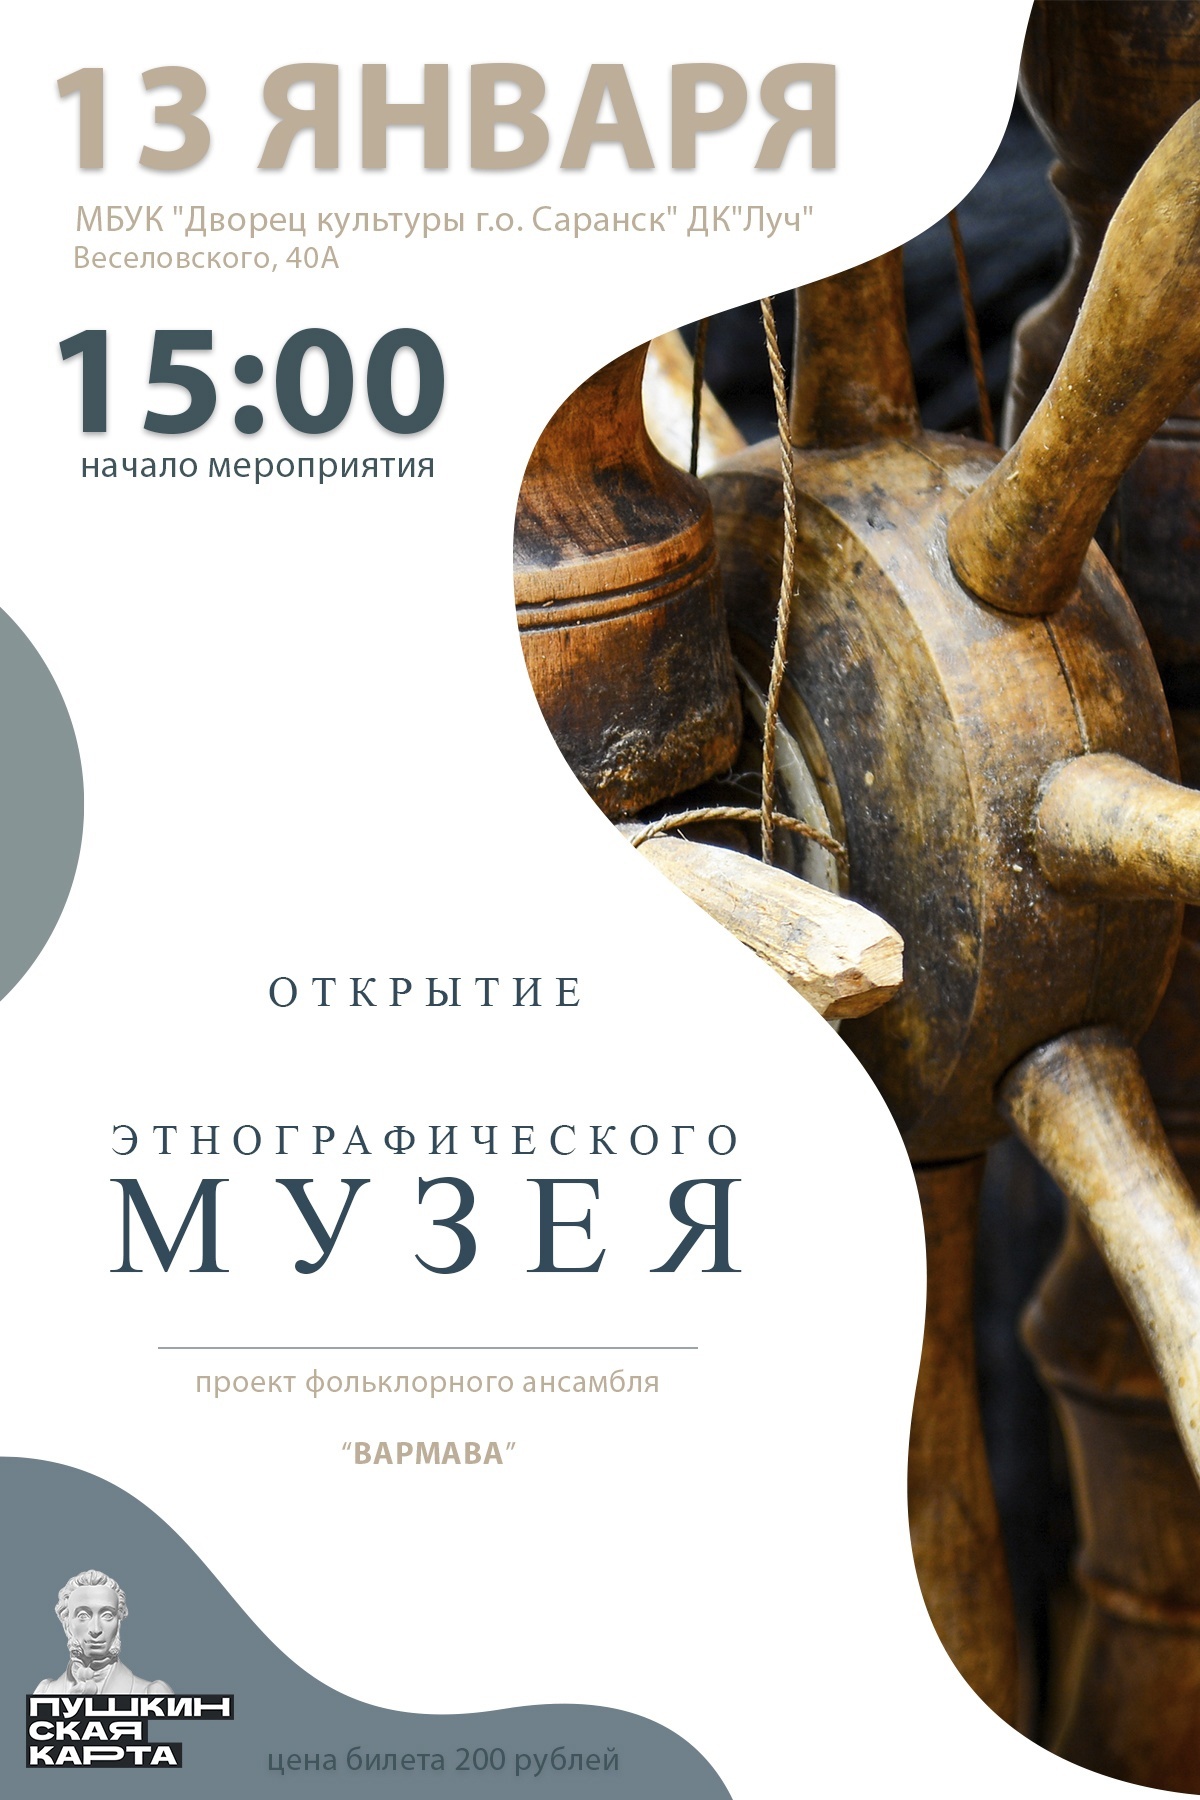 Дворец культуры г.о. Саранск ДК "Луч" приглашает на открытие музея фольклорного ансамбля «Вармава»